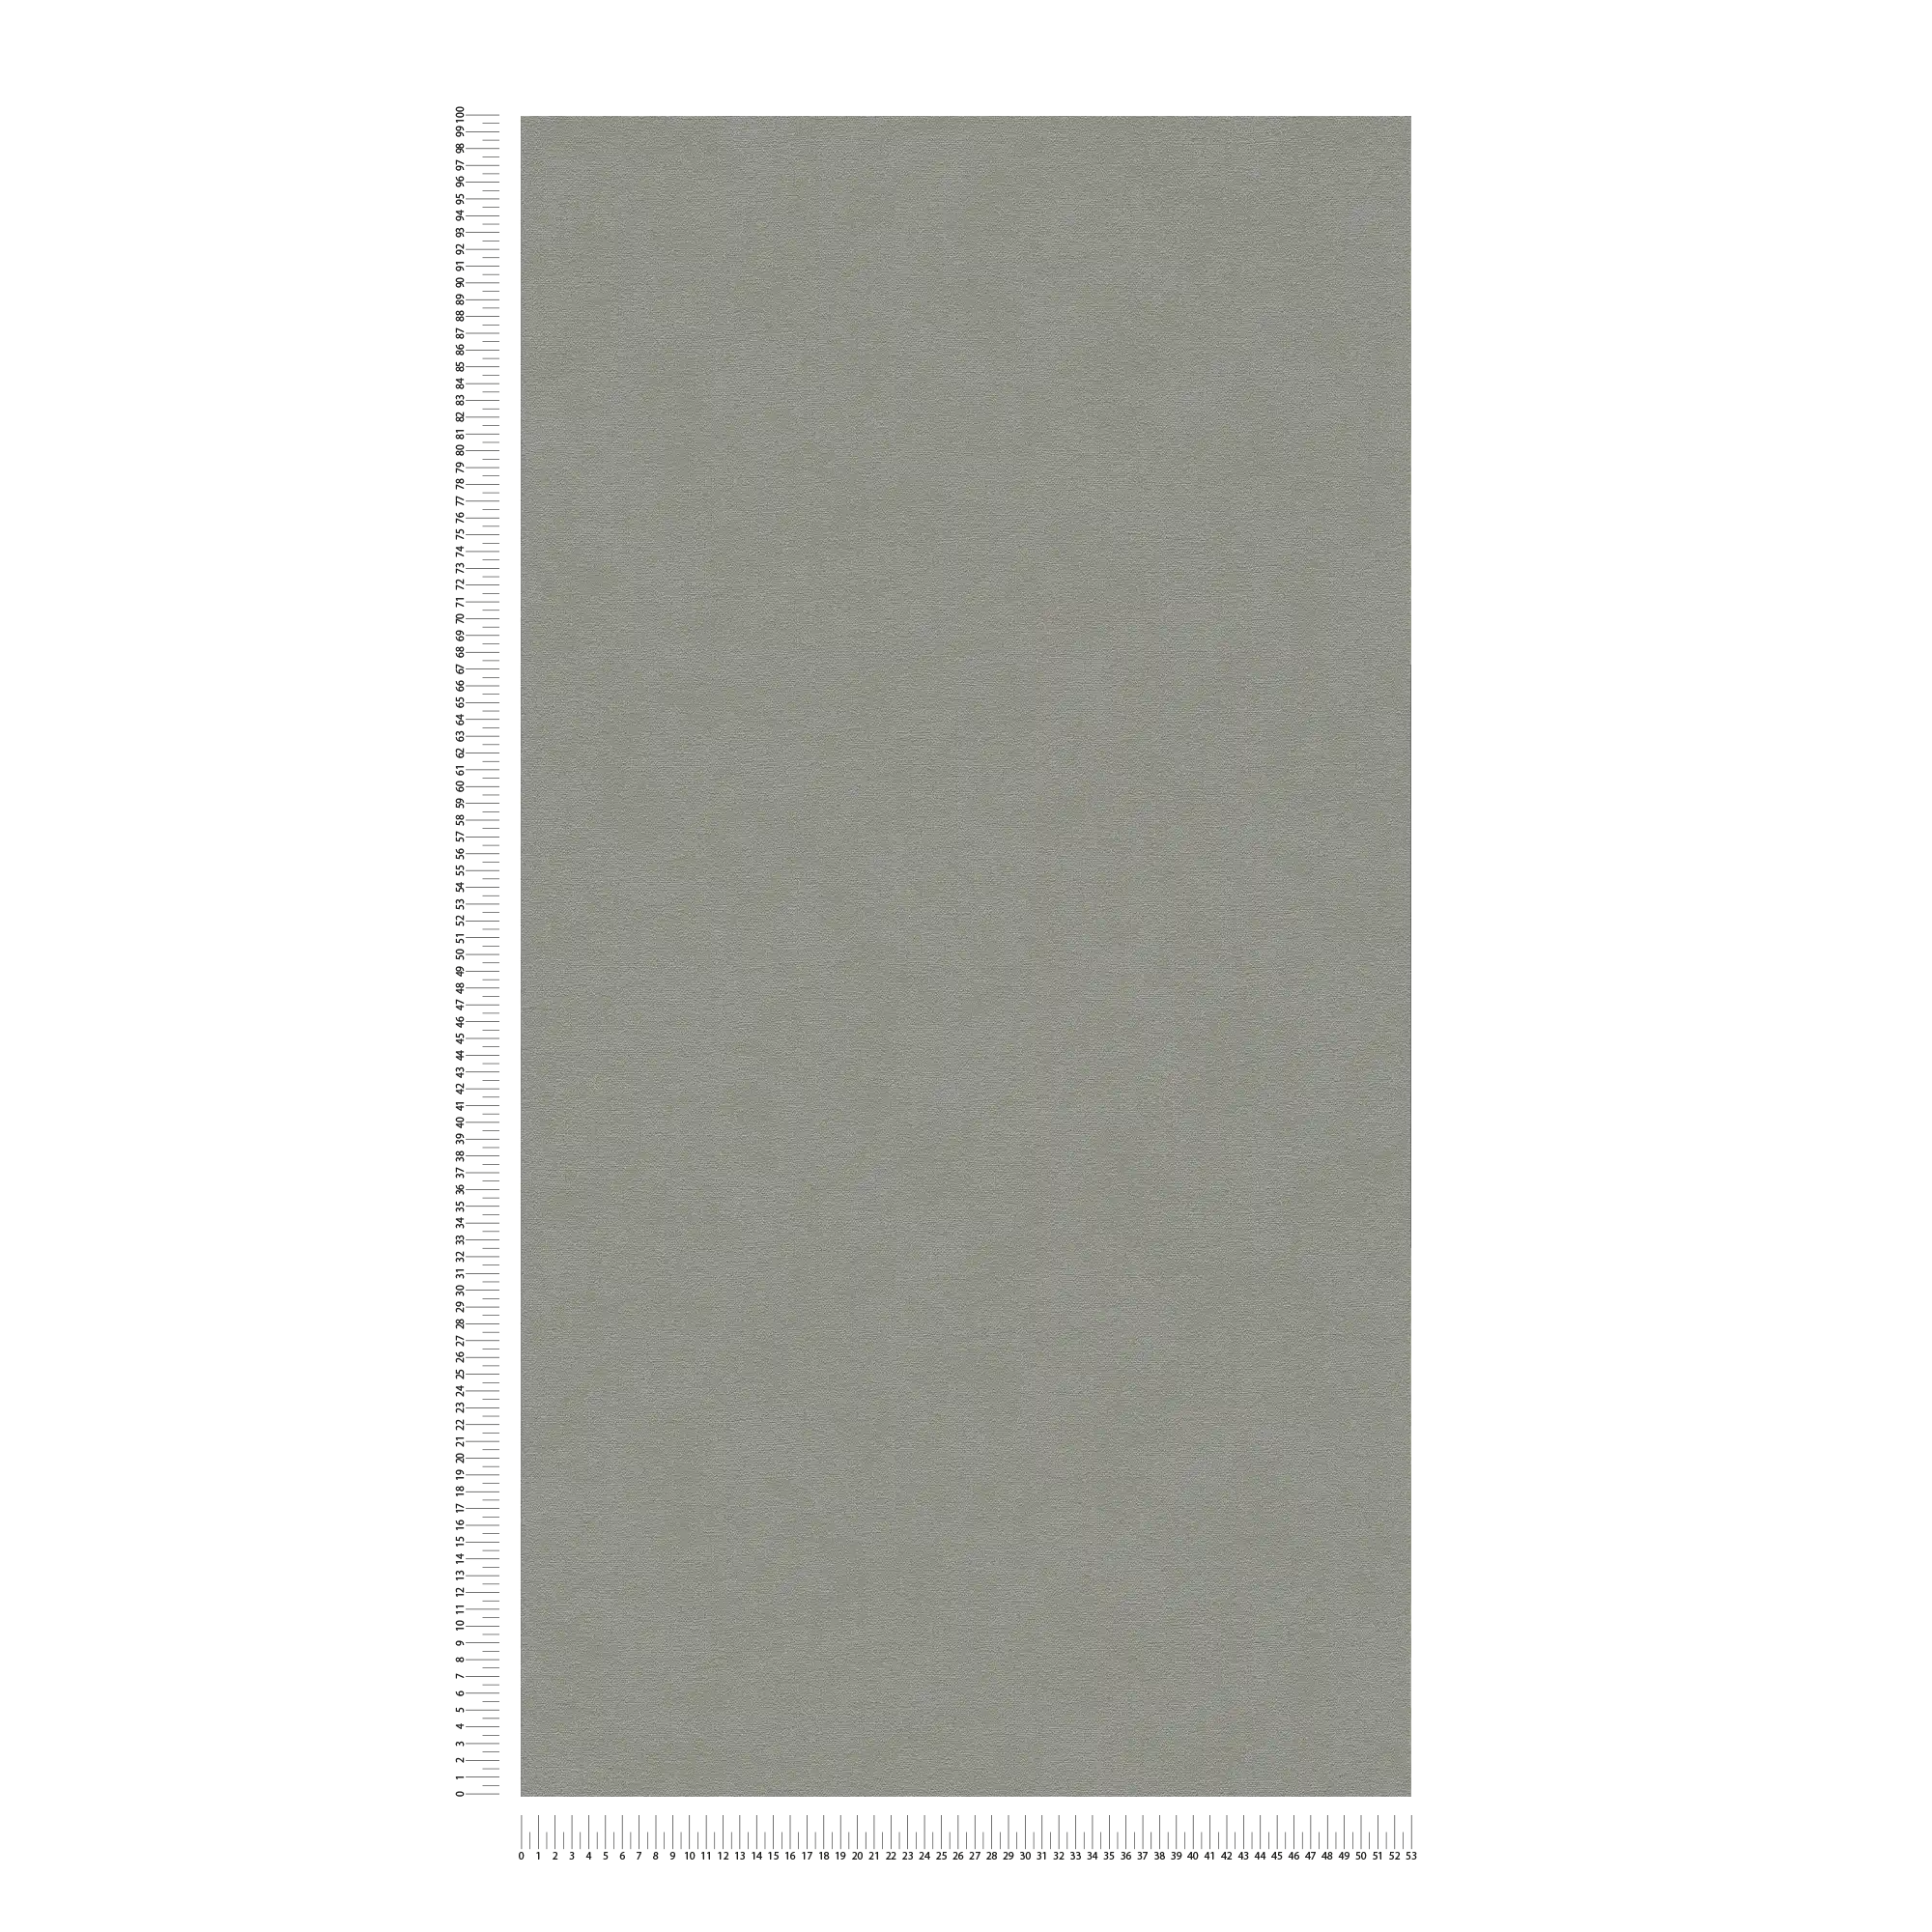             papier peint intissé uni surface finement structurée - gris
        